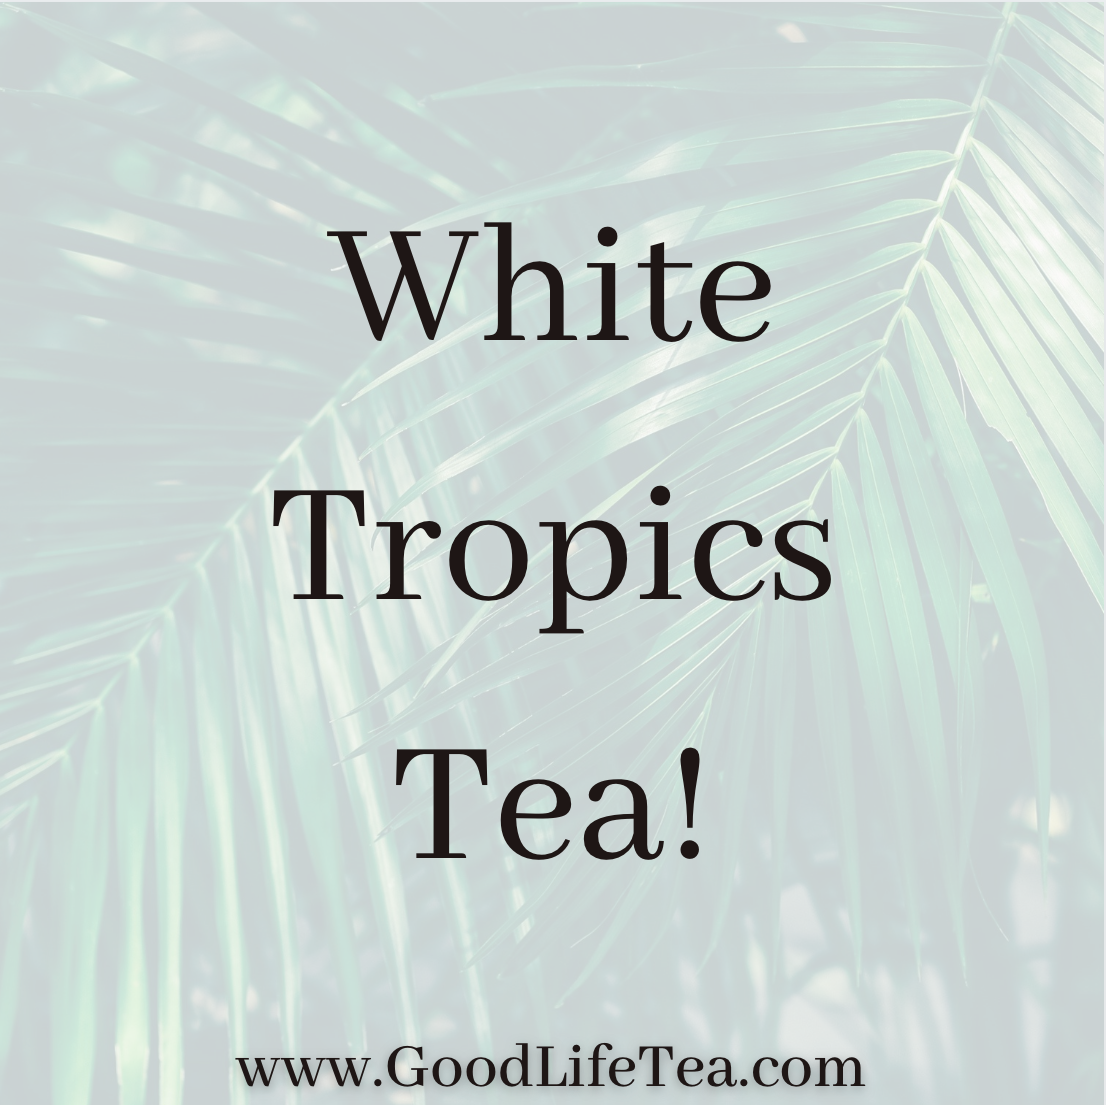 White Tropics Tea!